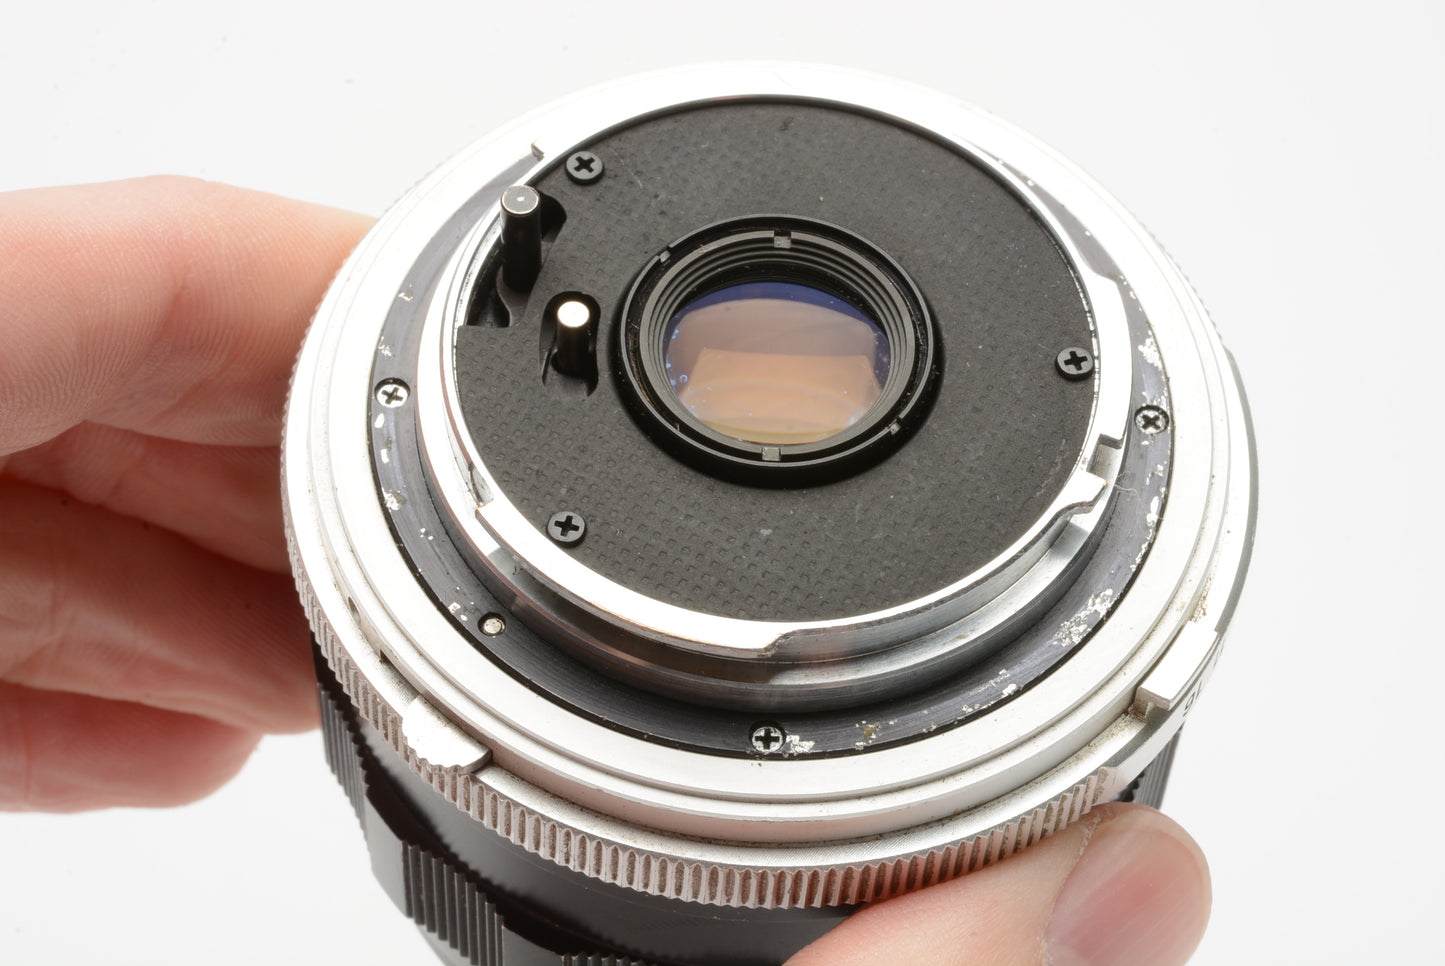 Minolta MC W. Rokkor HG 35mm F2.8 lens, Minolta MD mount, UV+caps